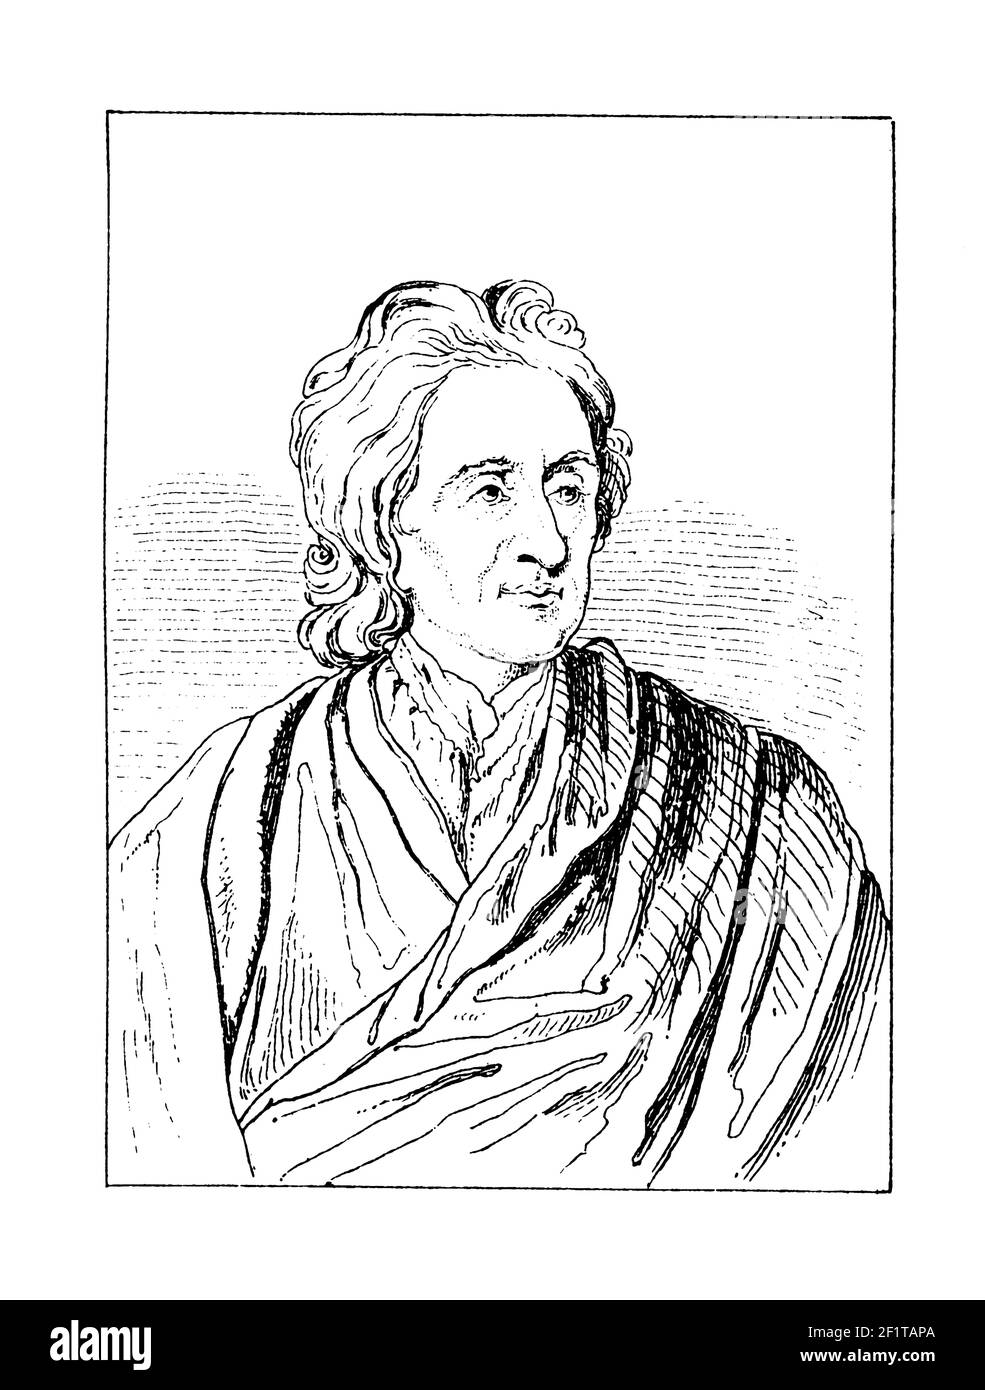 Grabado antiguo de un retrato de John Locke, filósofo inglés. Locke es considerado el primero de los empiristas británicos. Nació el 29 de agosto Foto de stock